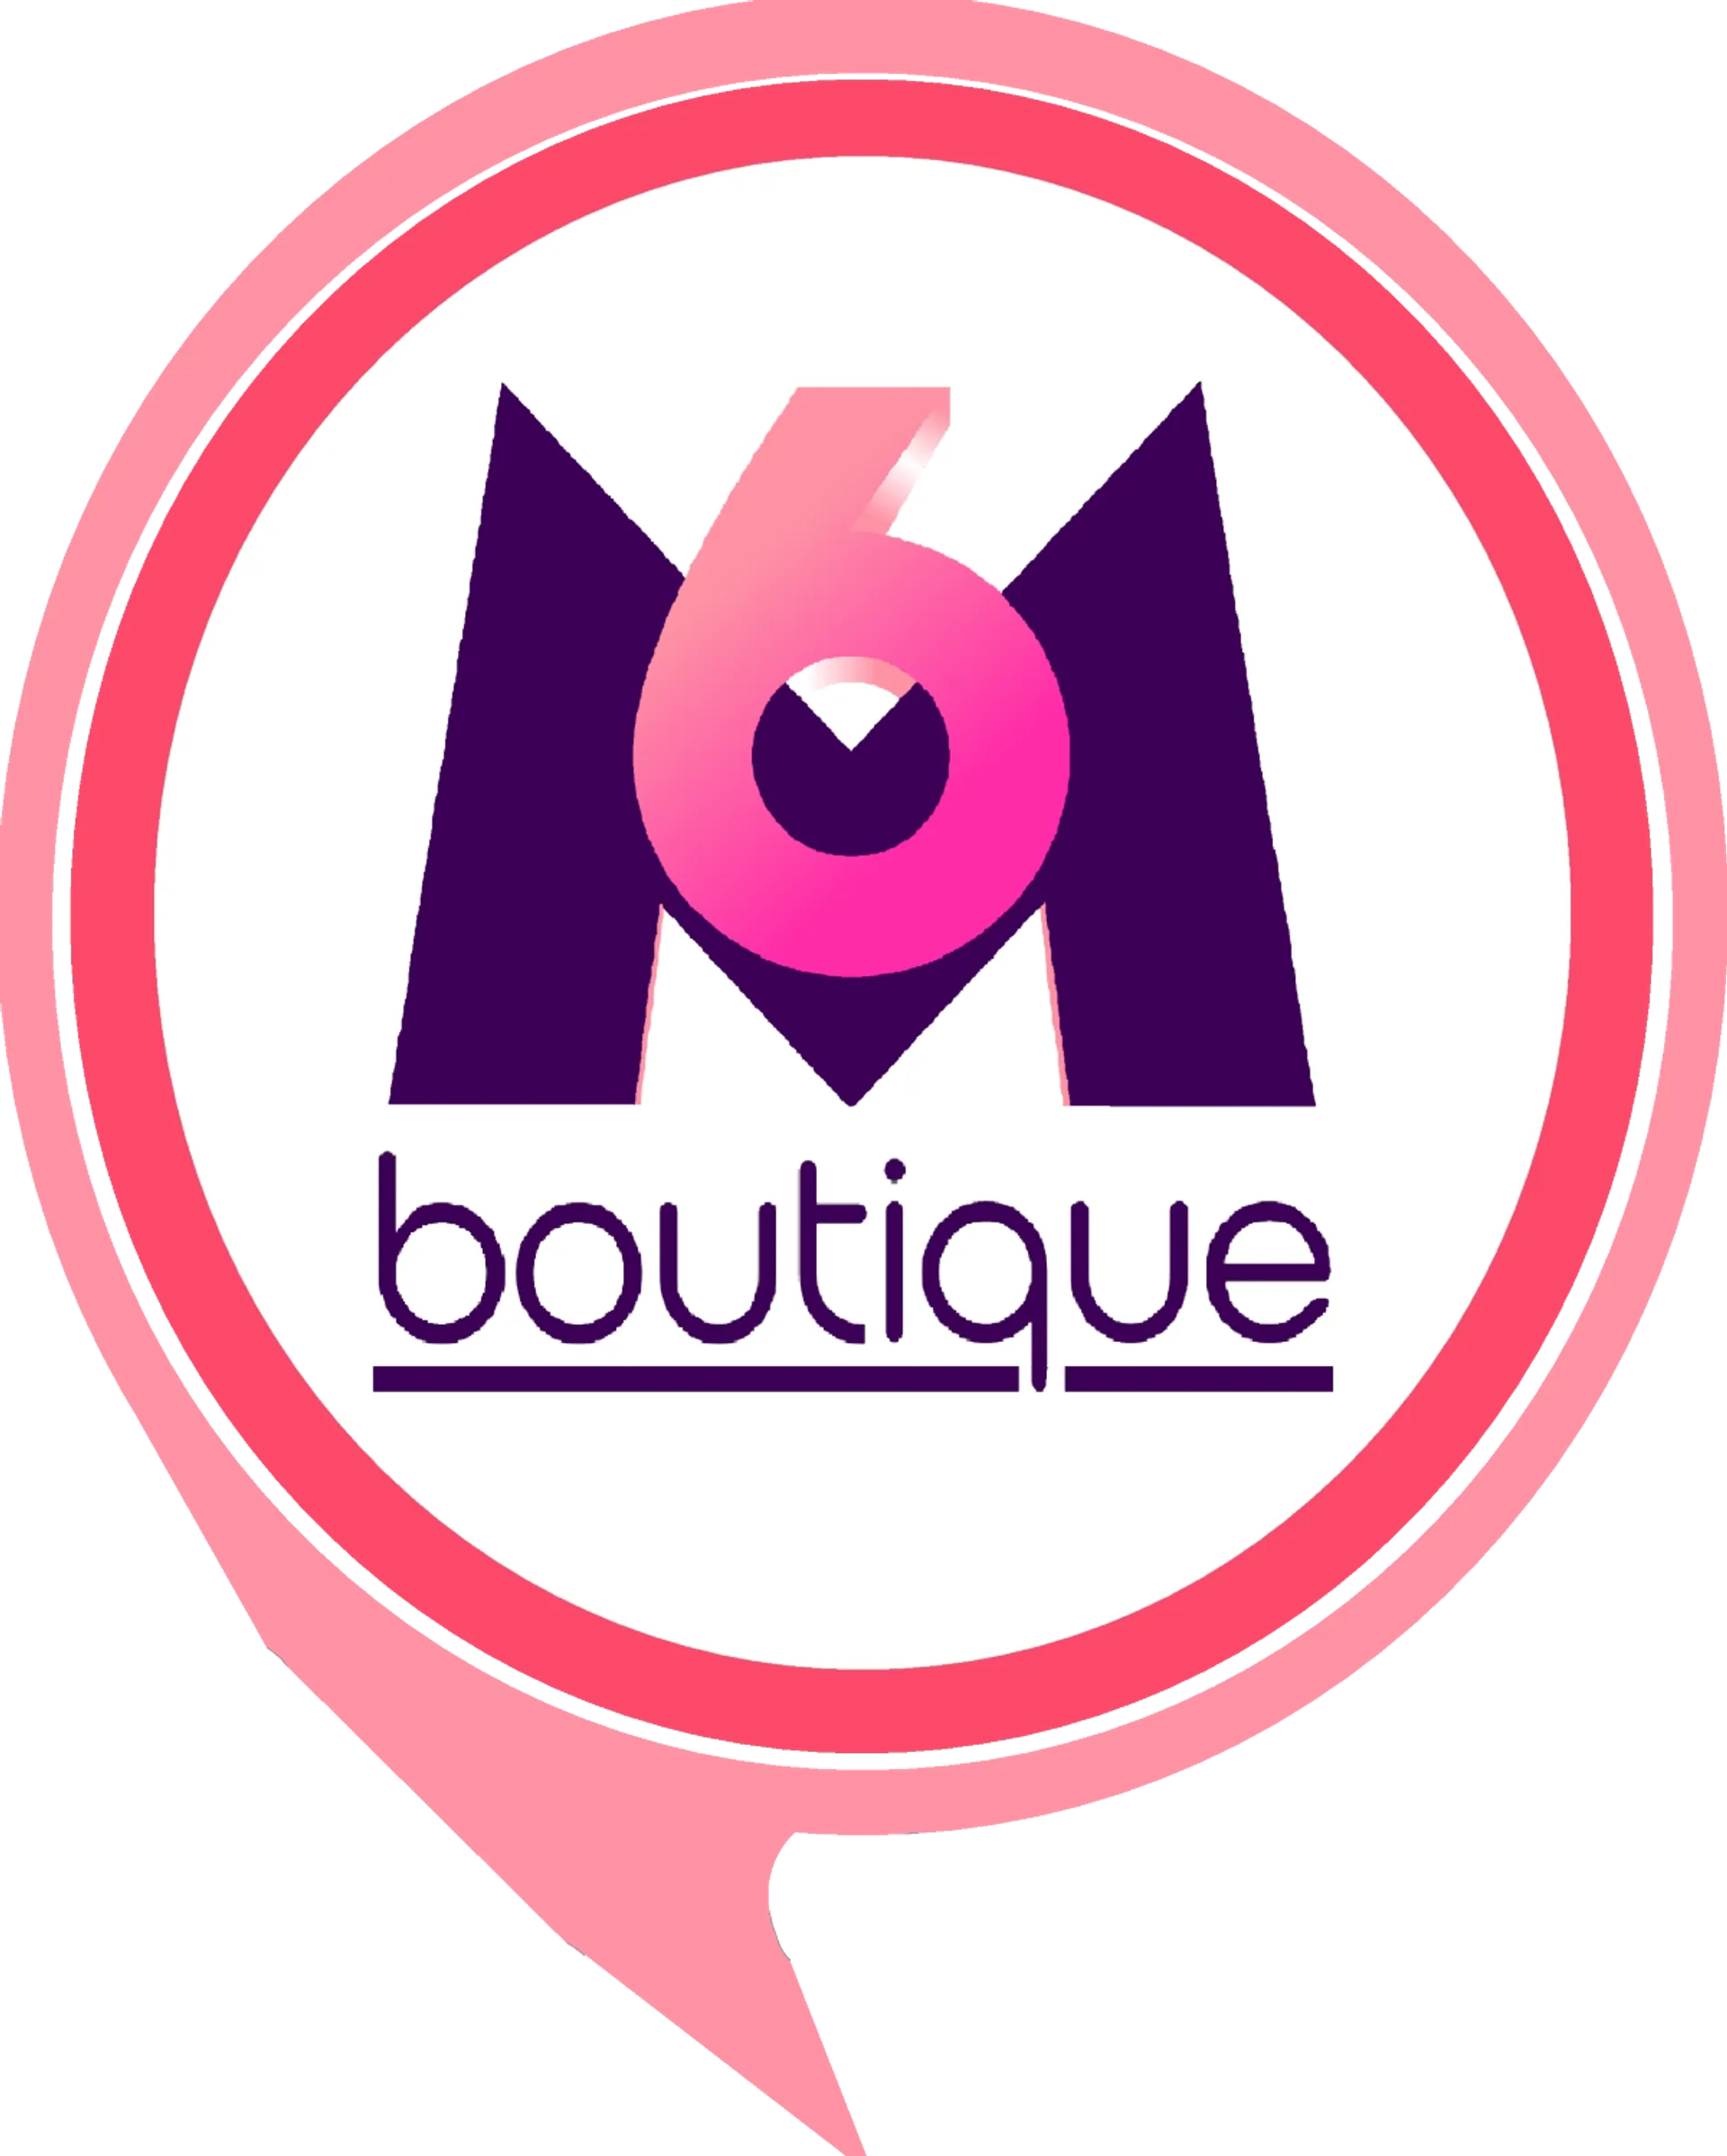 M6 BOUTIQUE logo du catalogue